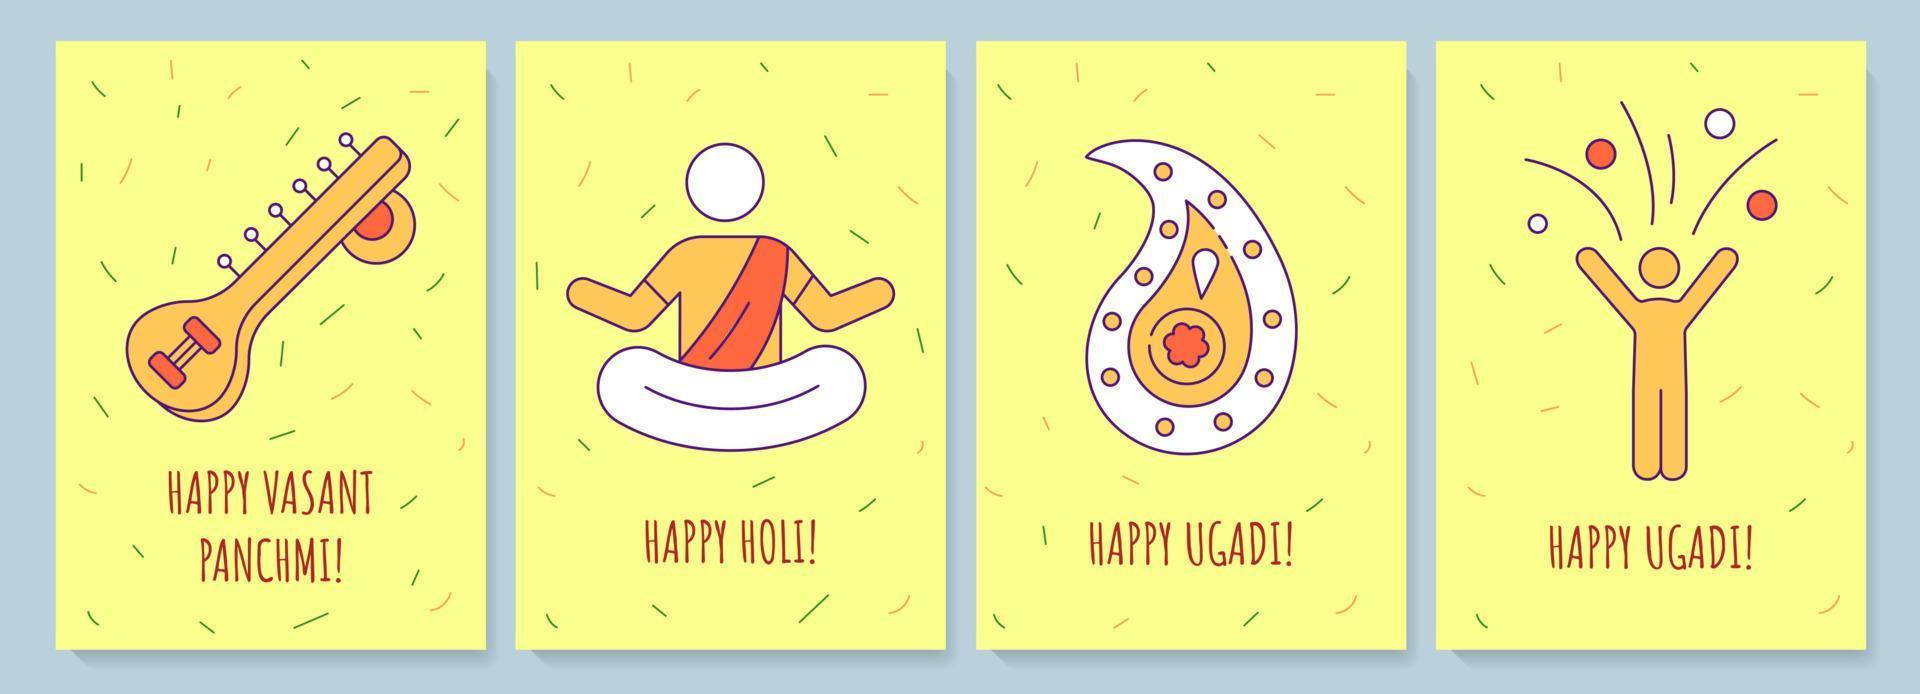 feiern indische feiertagsgrußkarten mit farbikonenelementsatz. Postkarten-Vektordesign. dekorativer flyer mit kreativer illustration. notecard mit glückwunschbotschaft auf gelb vektor